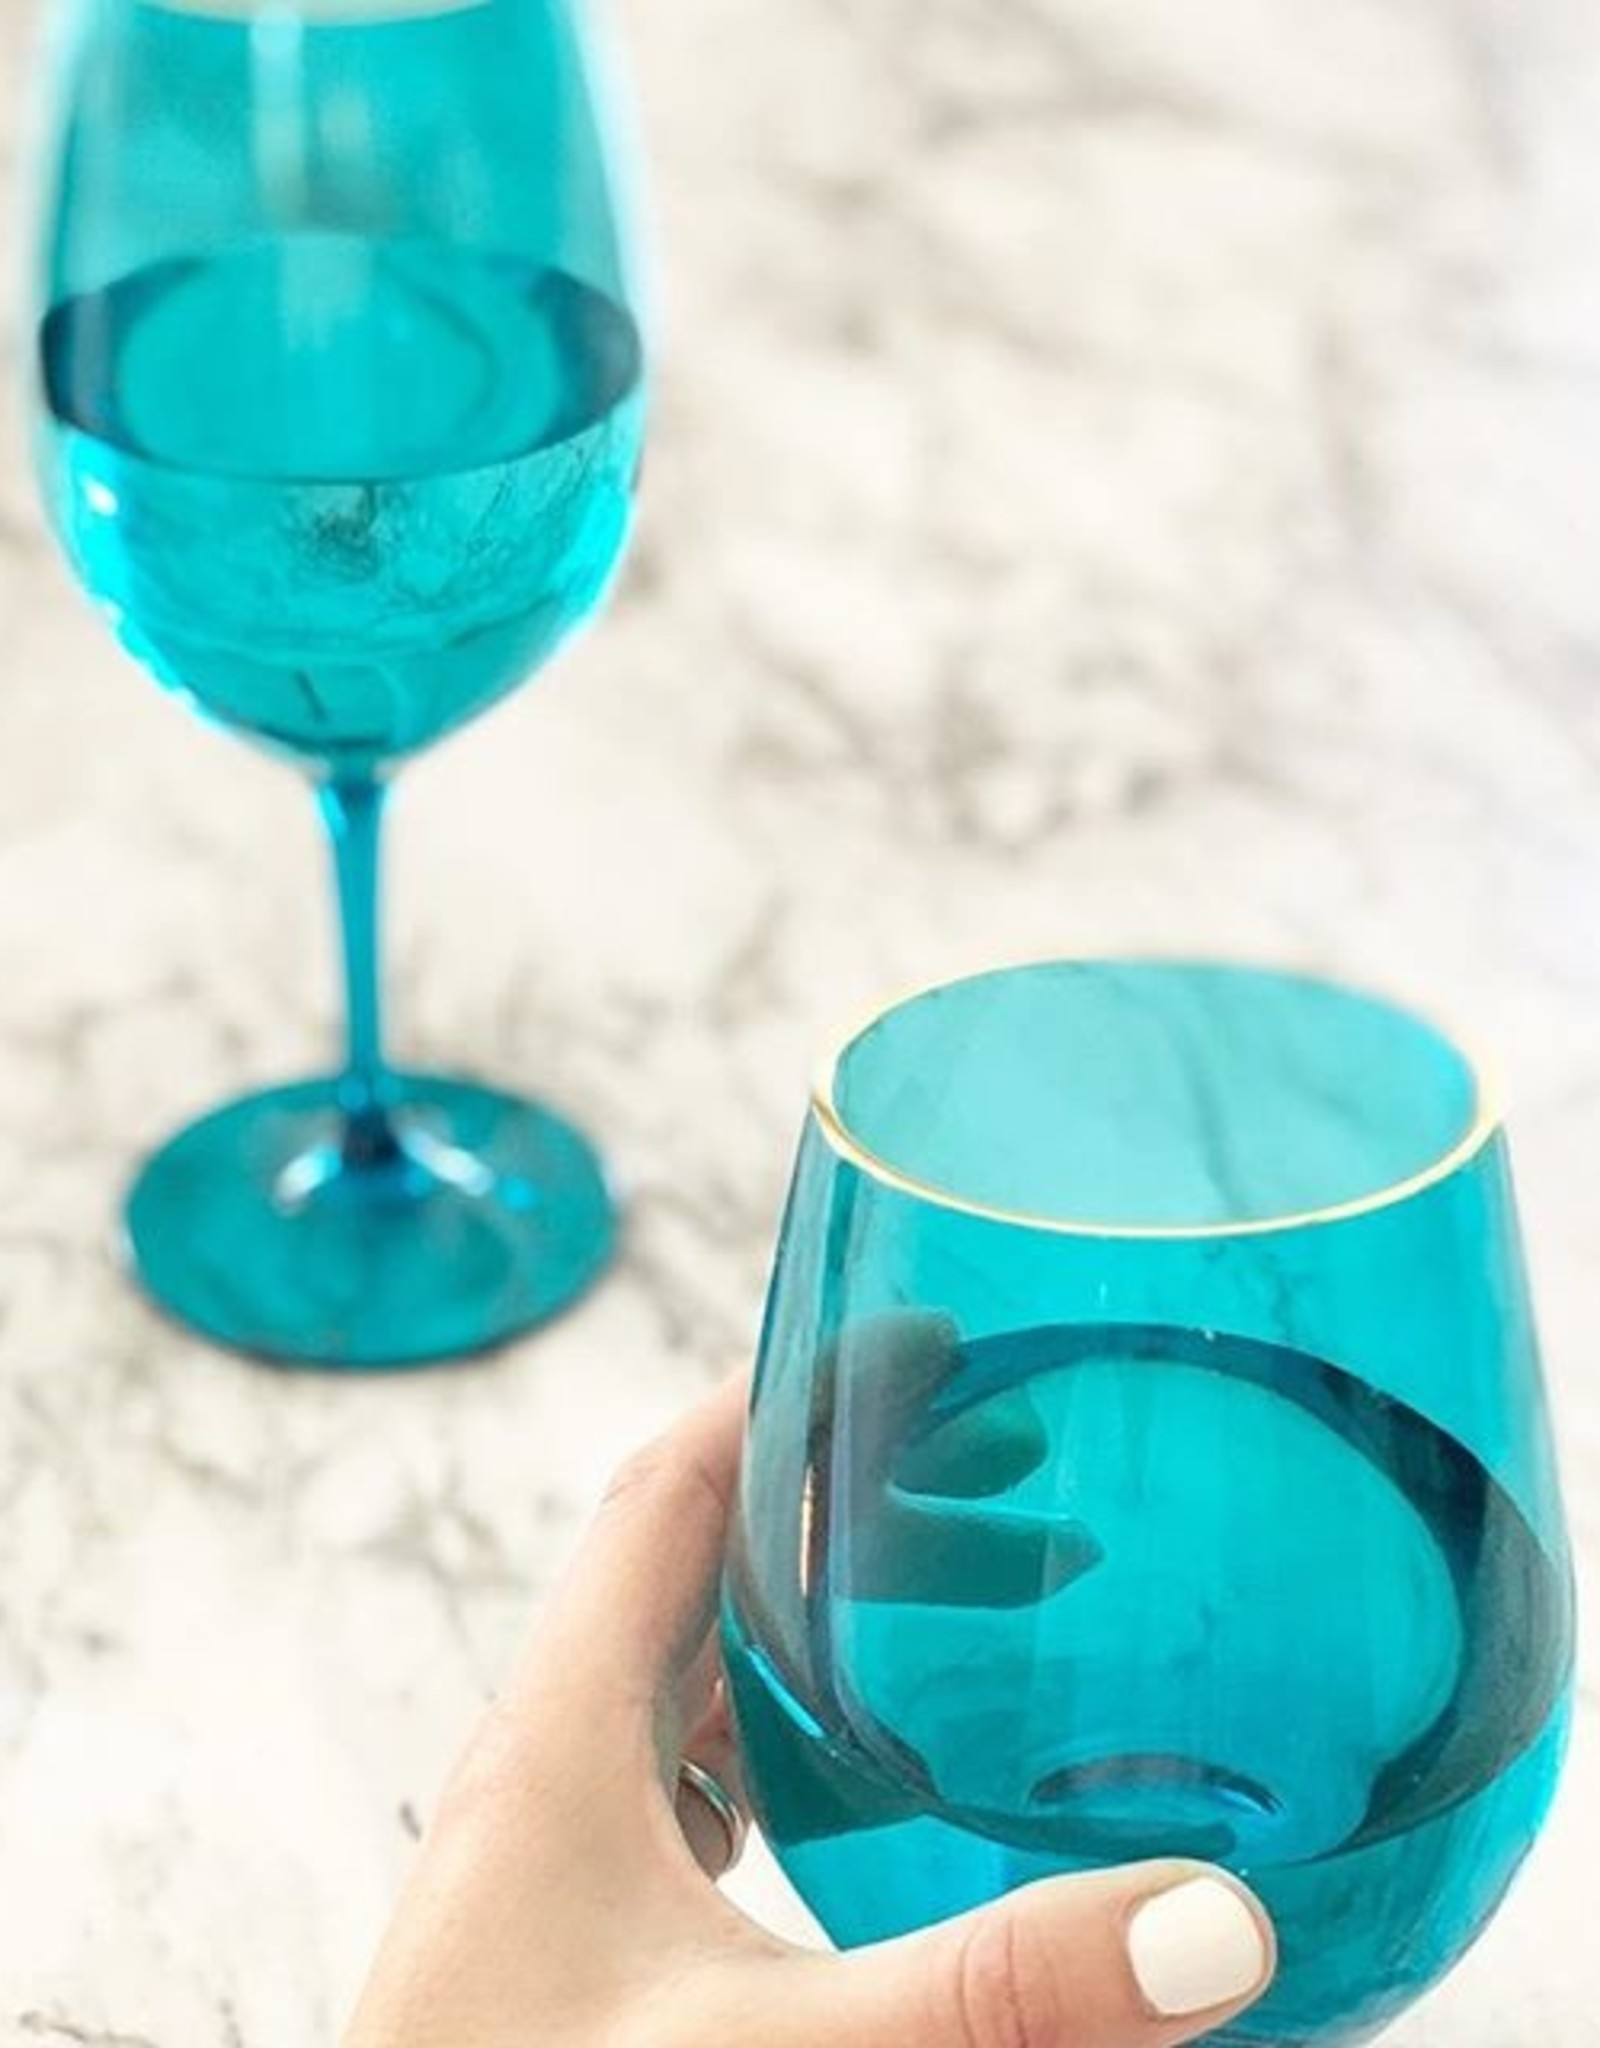 NuGlass 6 Wine Glass Set